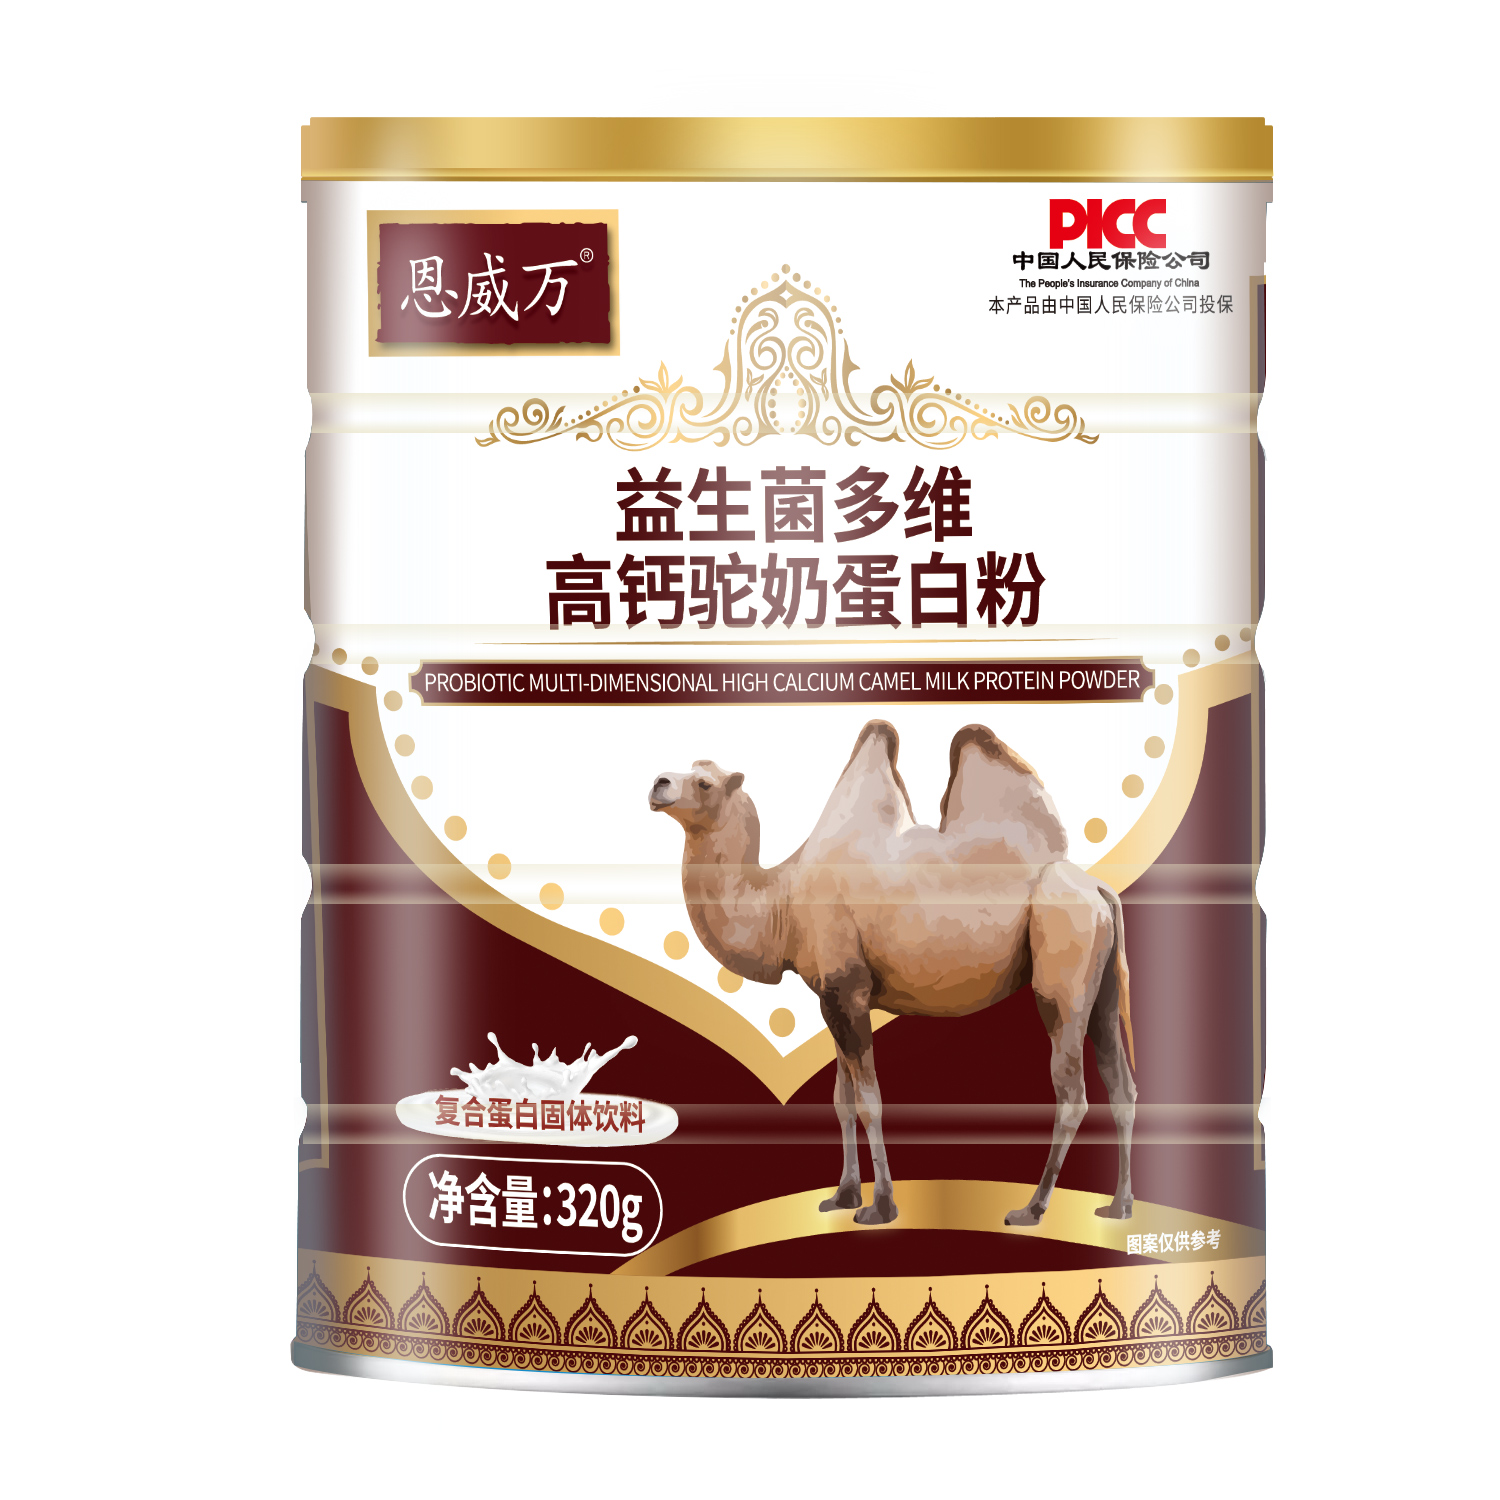 恩威万益生菌多维高钙骆驼奶蛋白粉320gX6罐